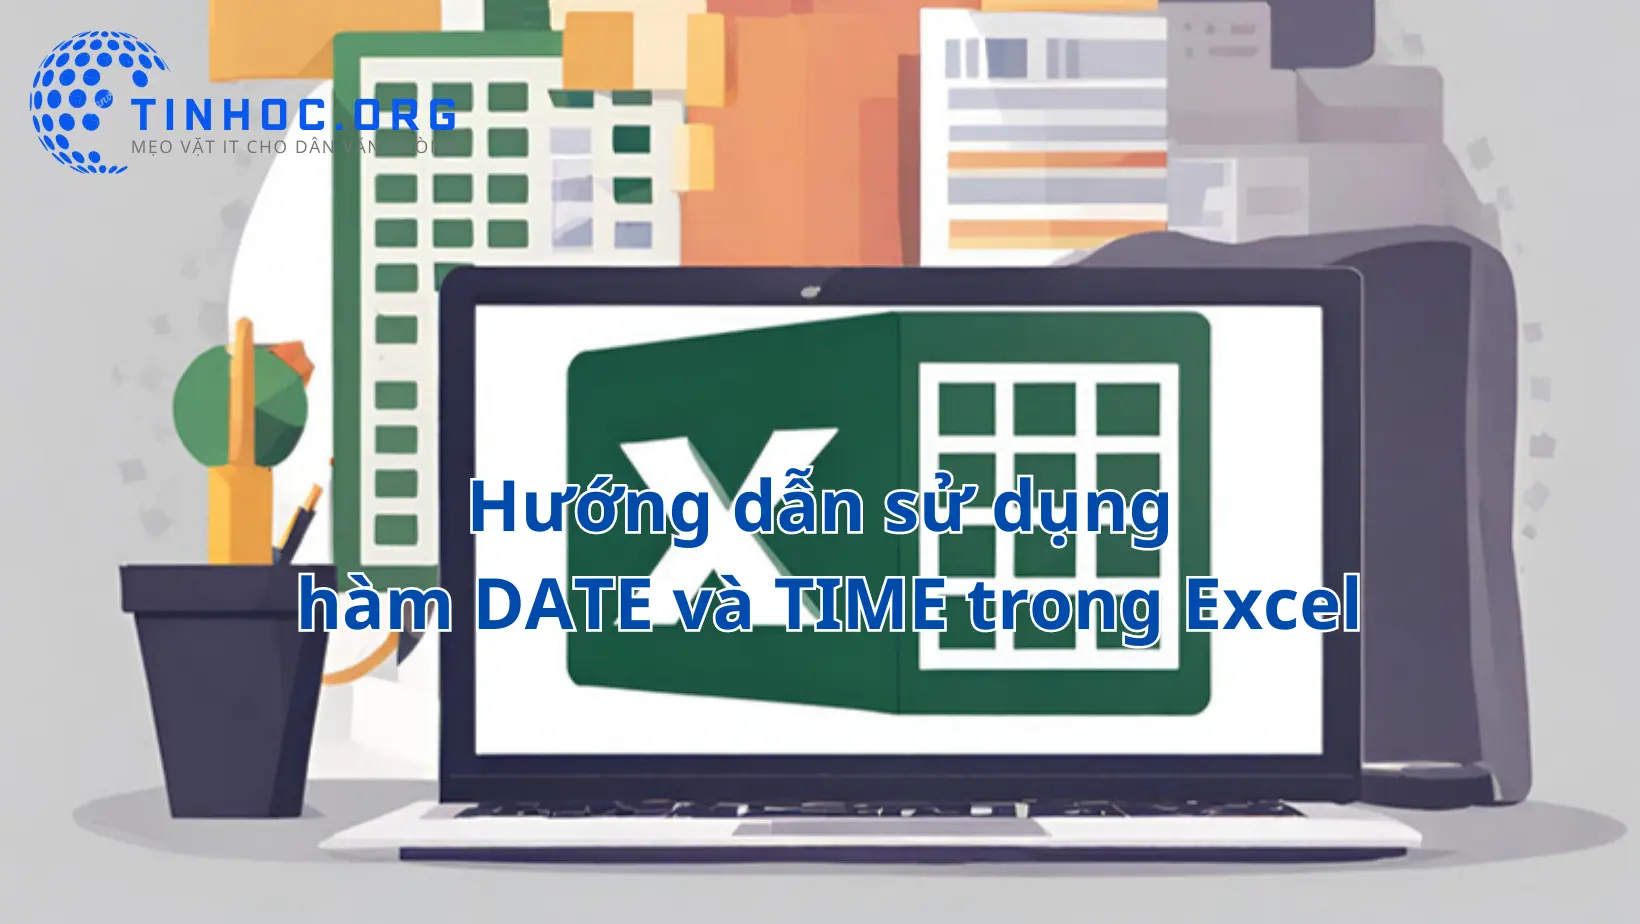 Hàm DATE và TIME trong Microsoft Excel là các hàm mạnh mẽ cho phép bạn xử lý và tính toán dữ liệu liên quan đến ngày tháng và thời gian.